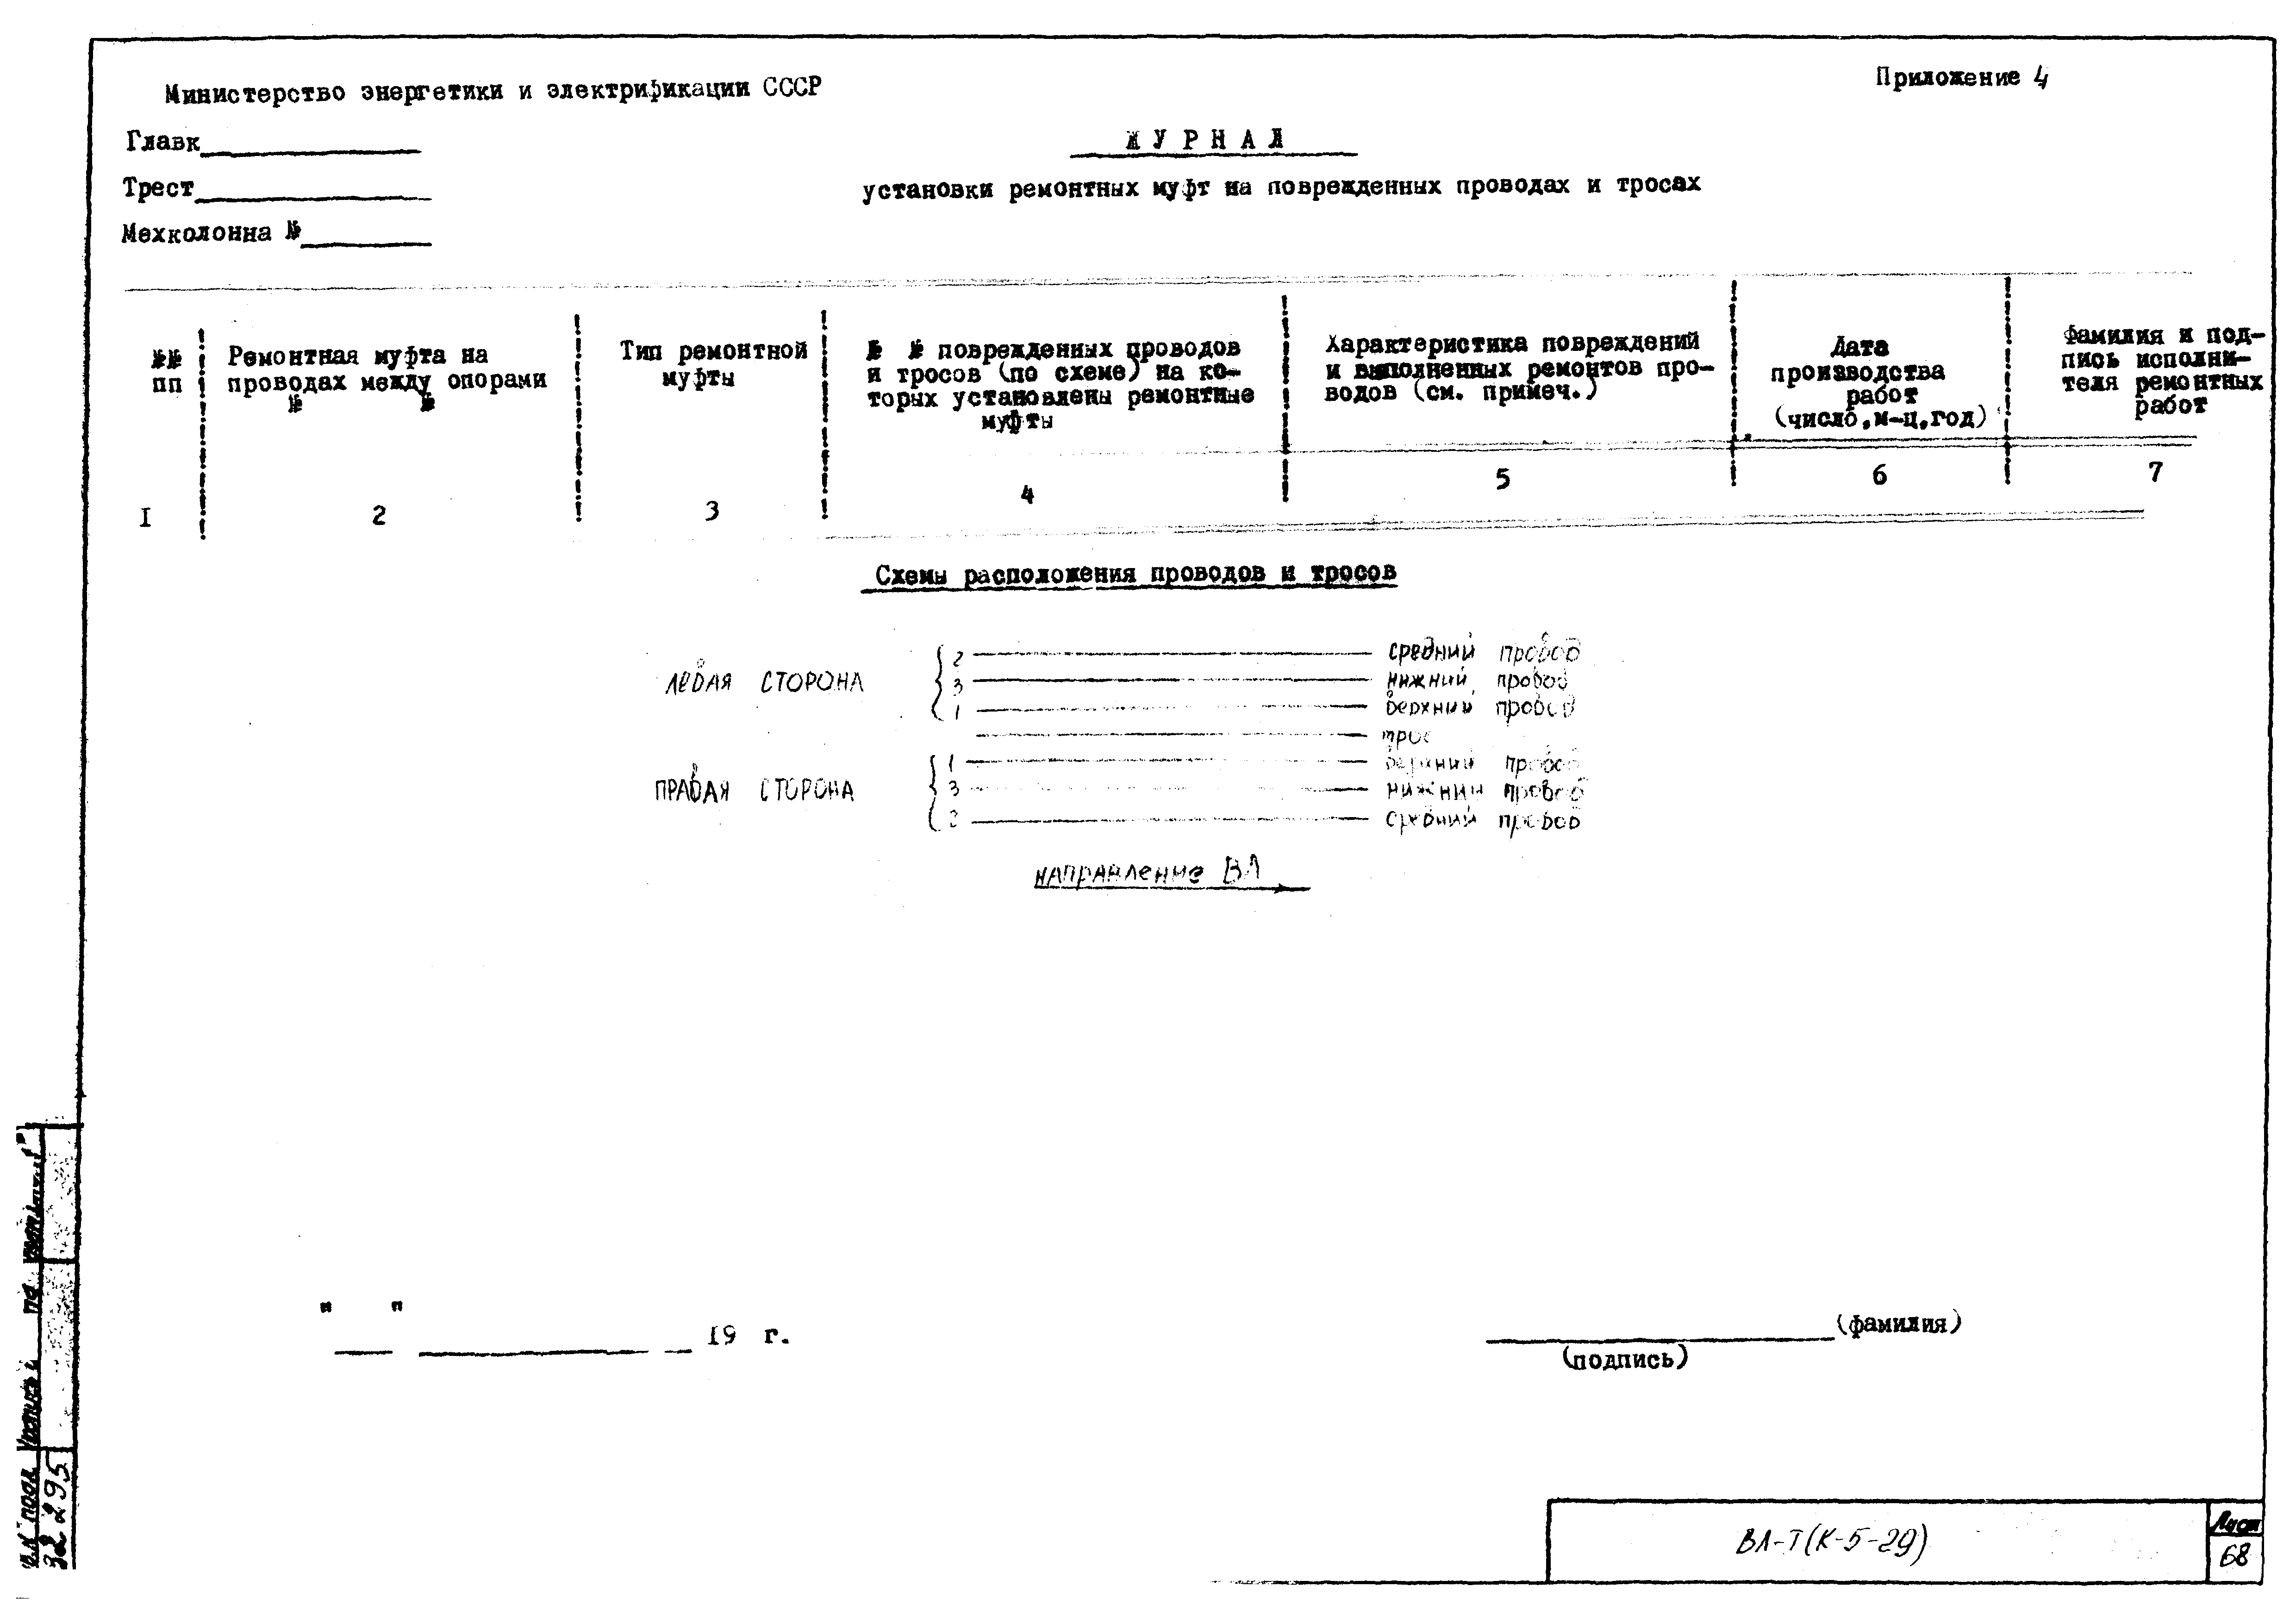 Технологическая карта К-5-29-6